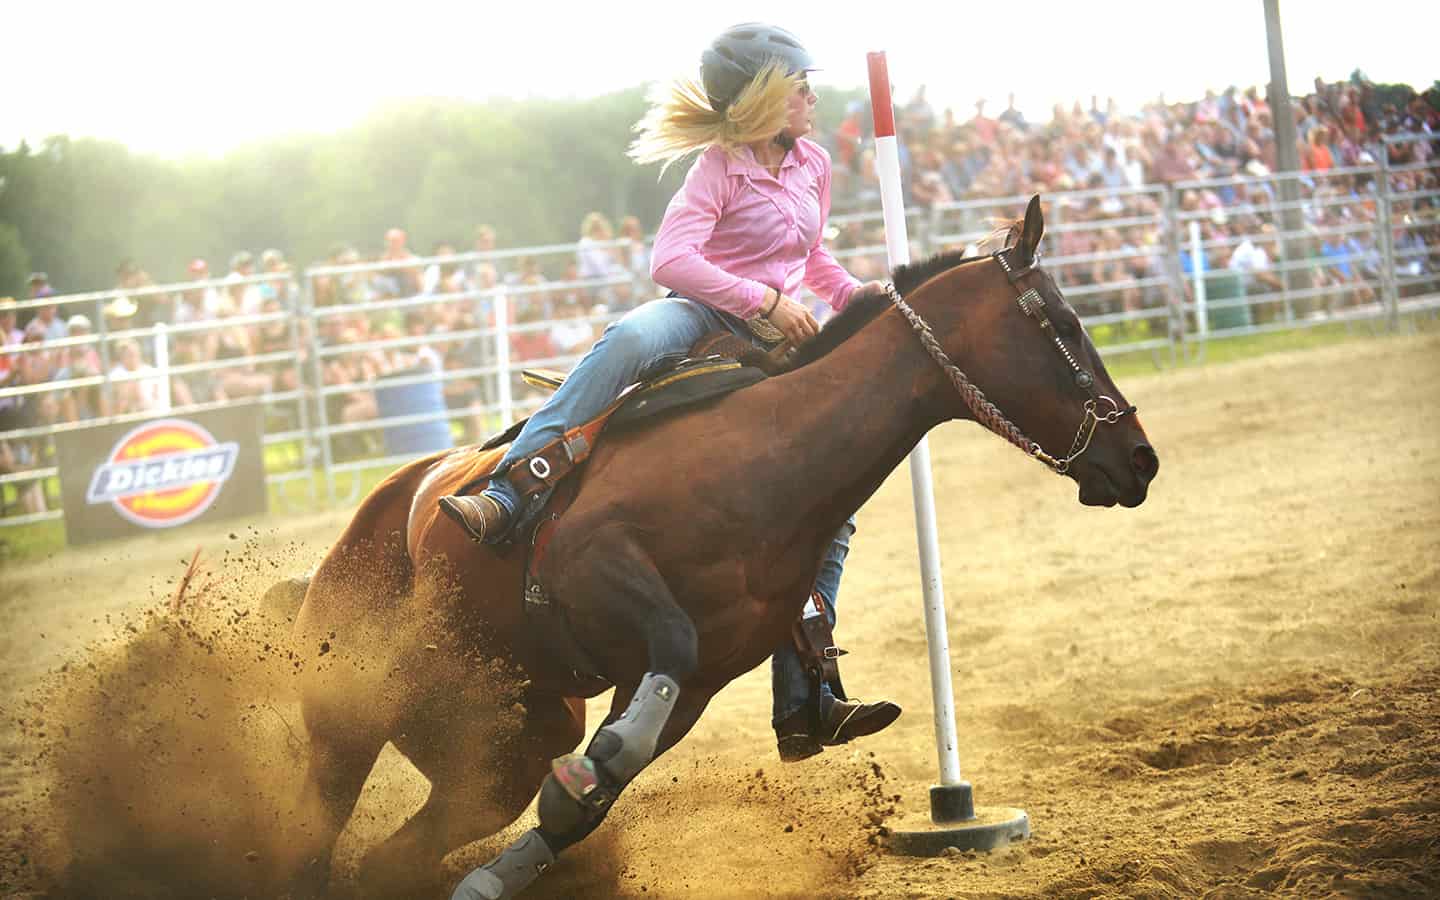 Rodeo thrills abound!